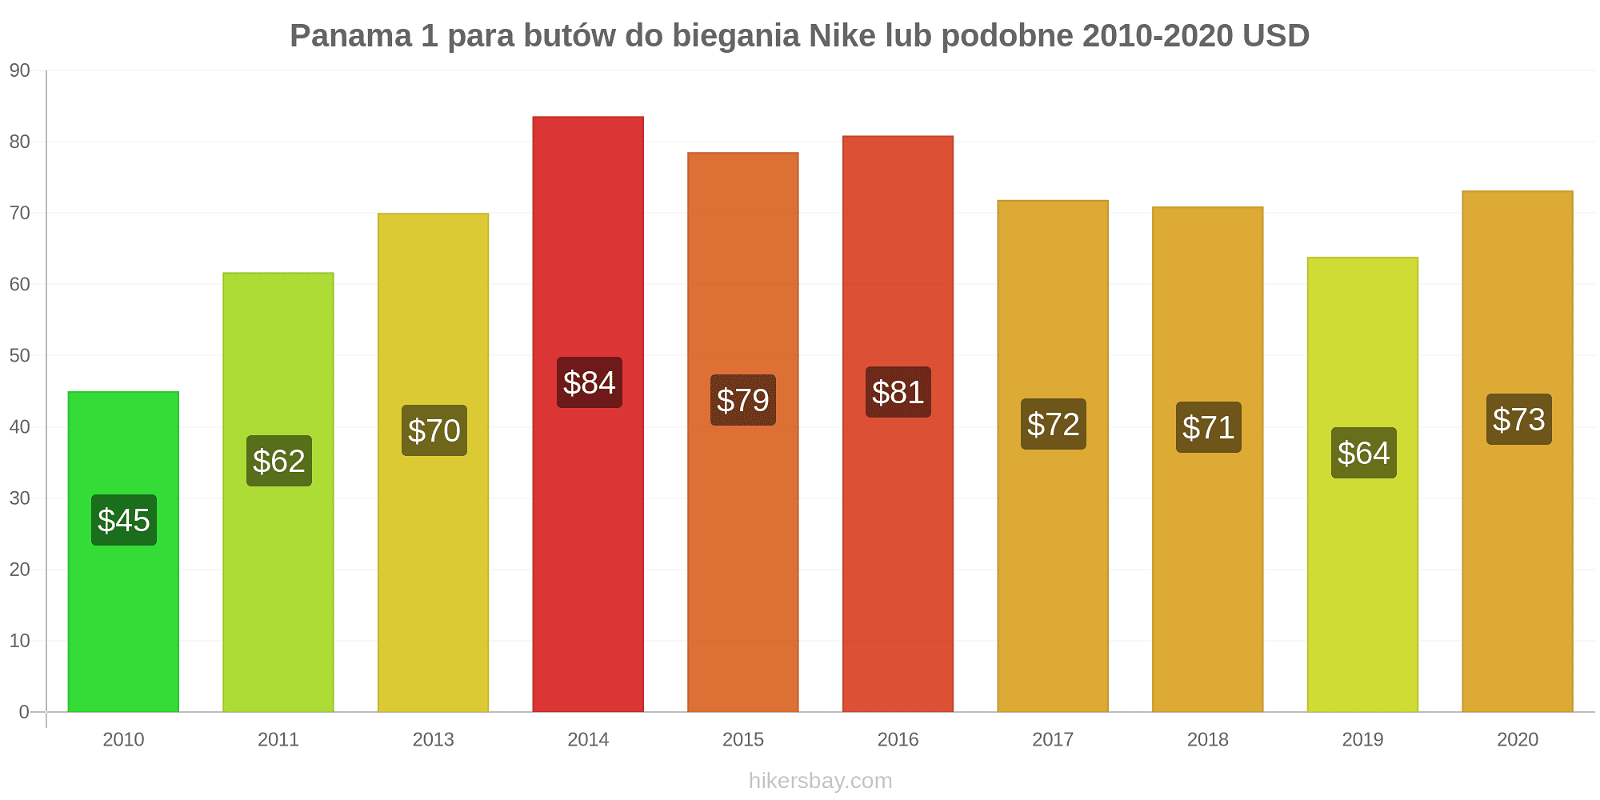 Panama zmiany cen 1 para butów do biegania Nike lub podobne hikersbay.com